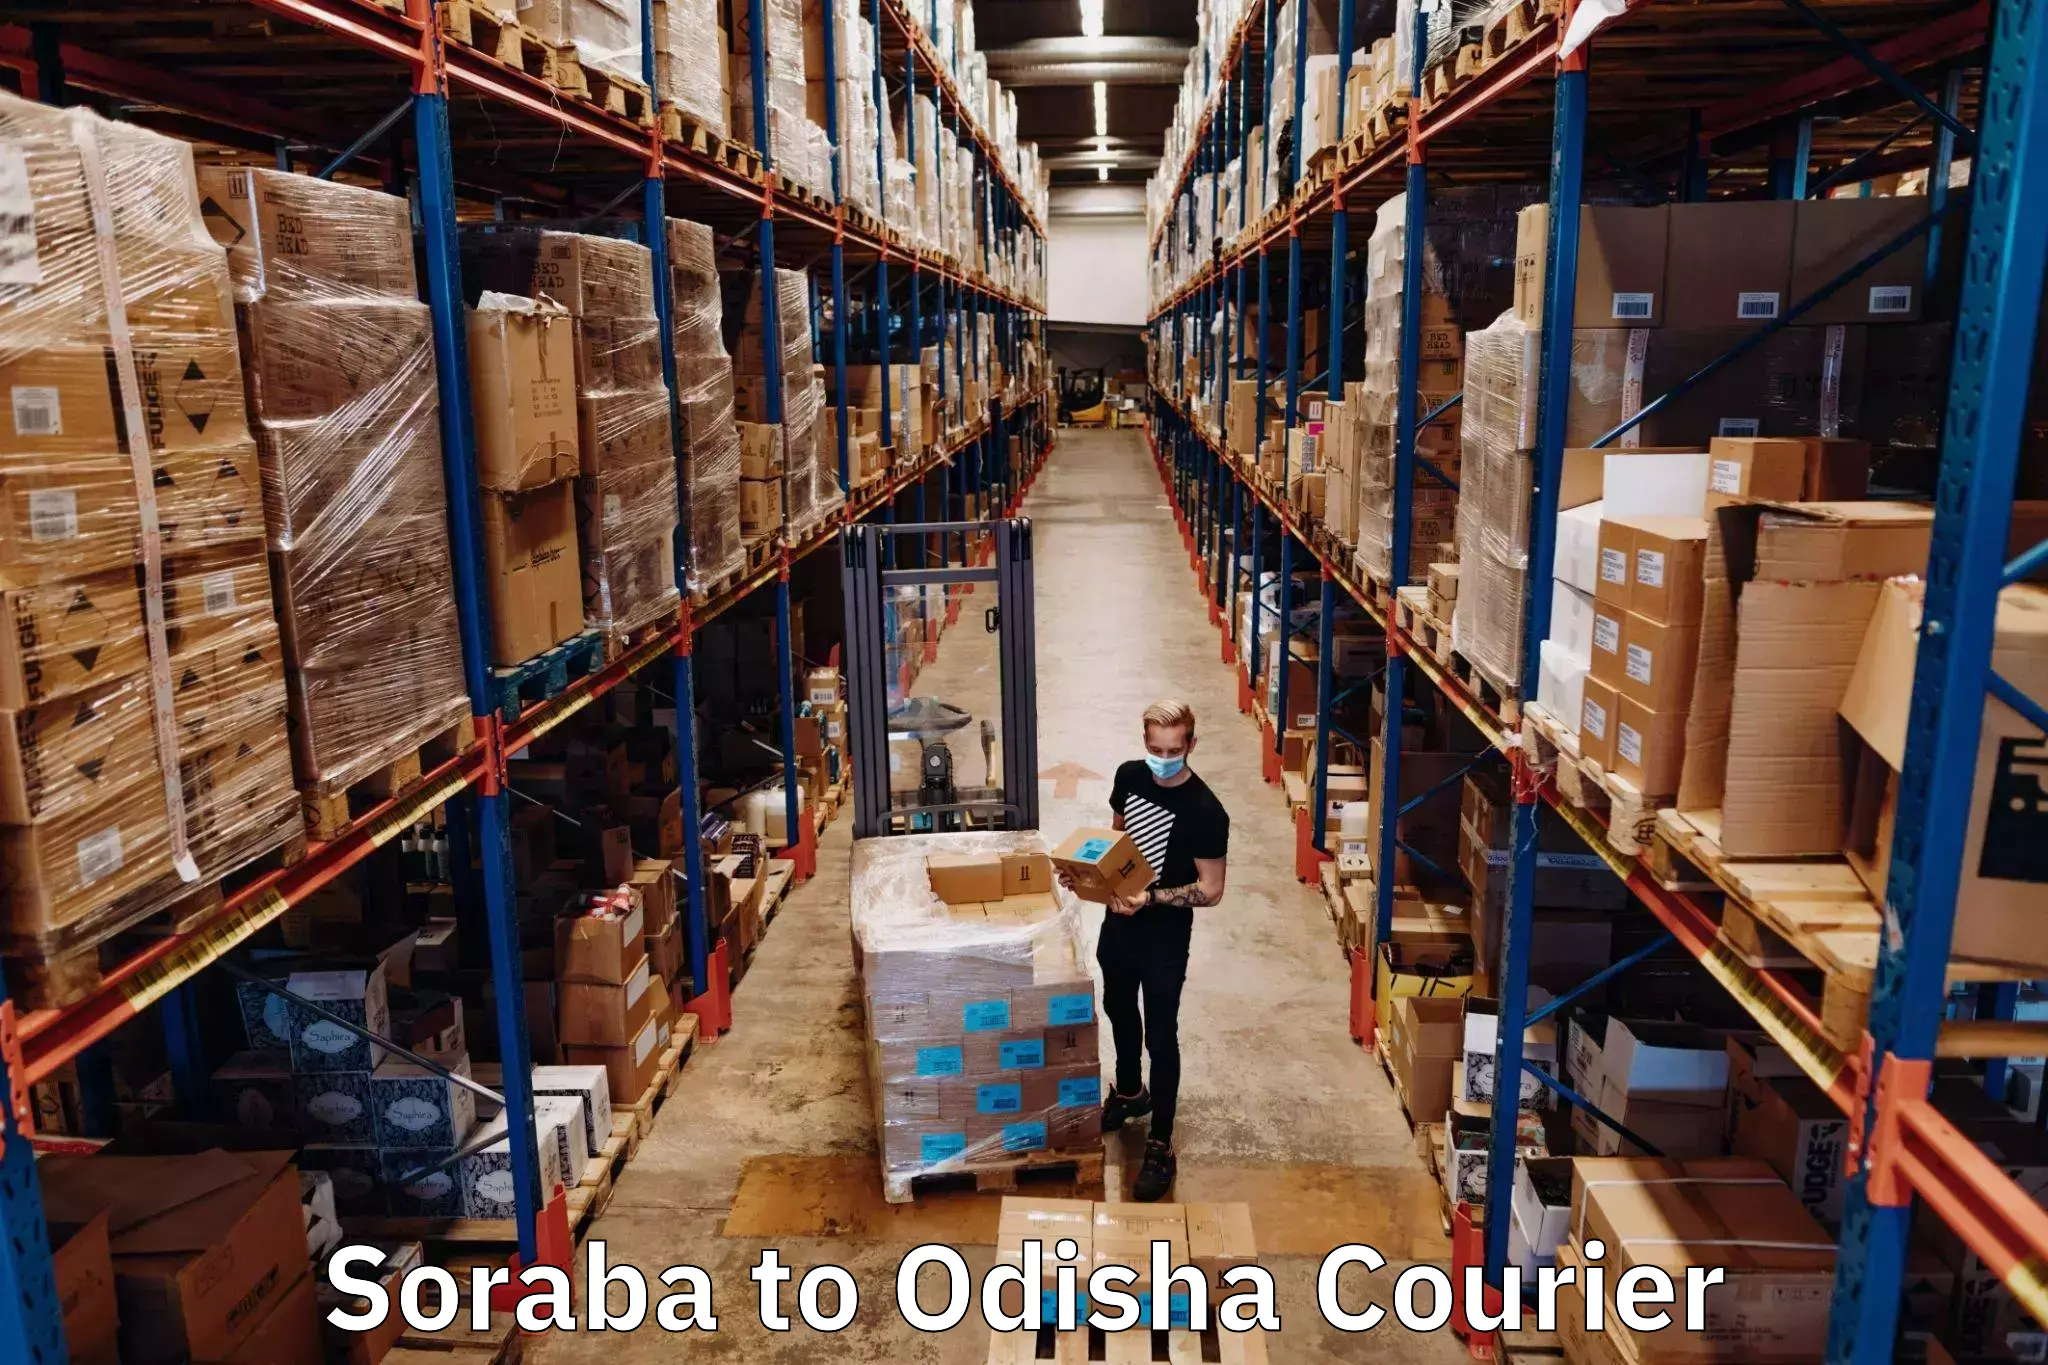 Sustainable shipping practices Soraba to Binjharpur